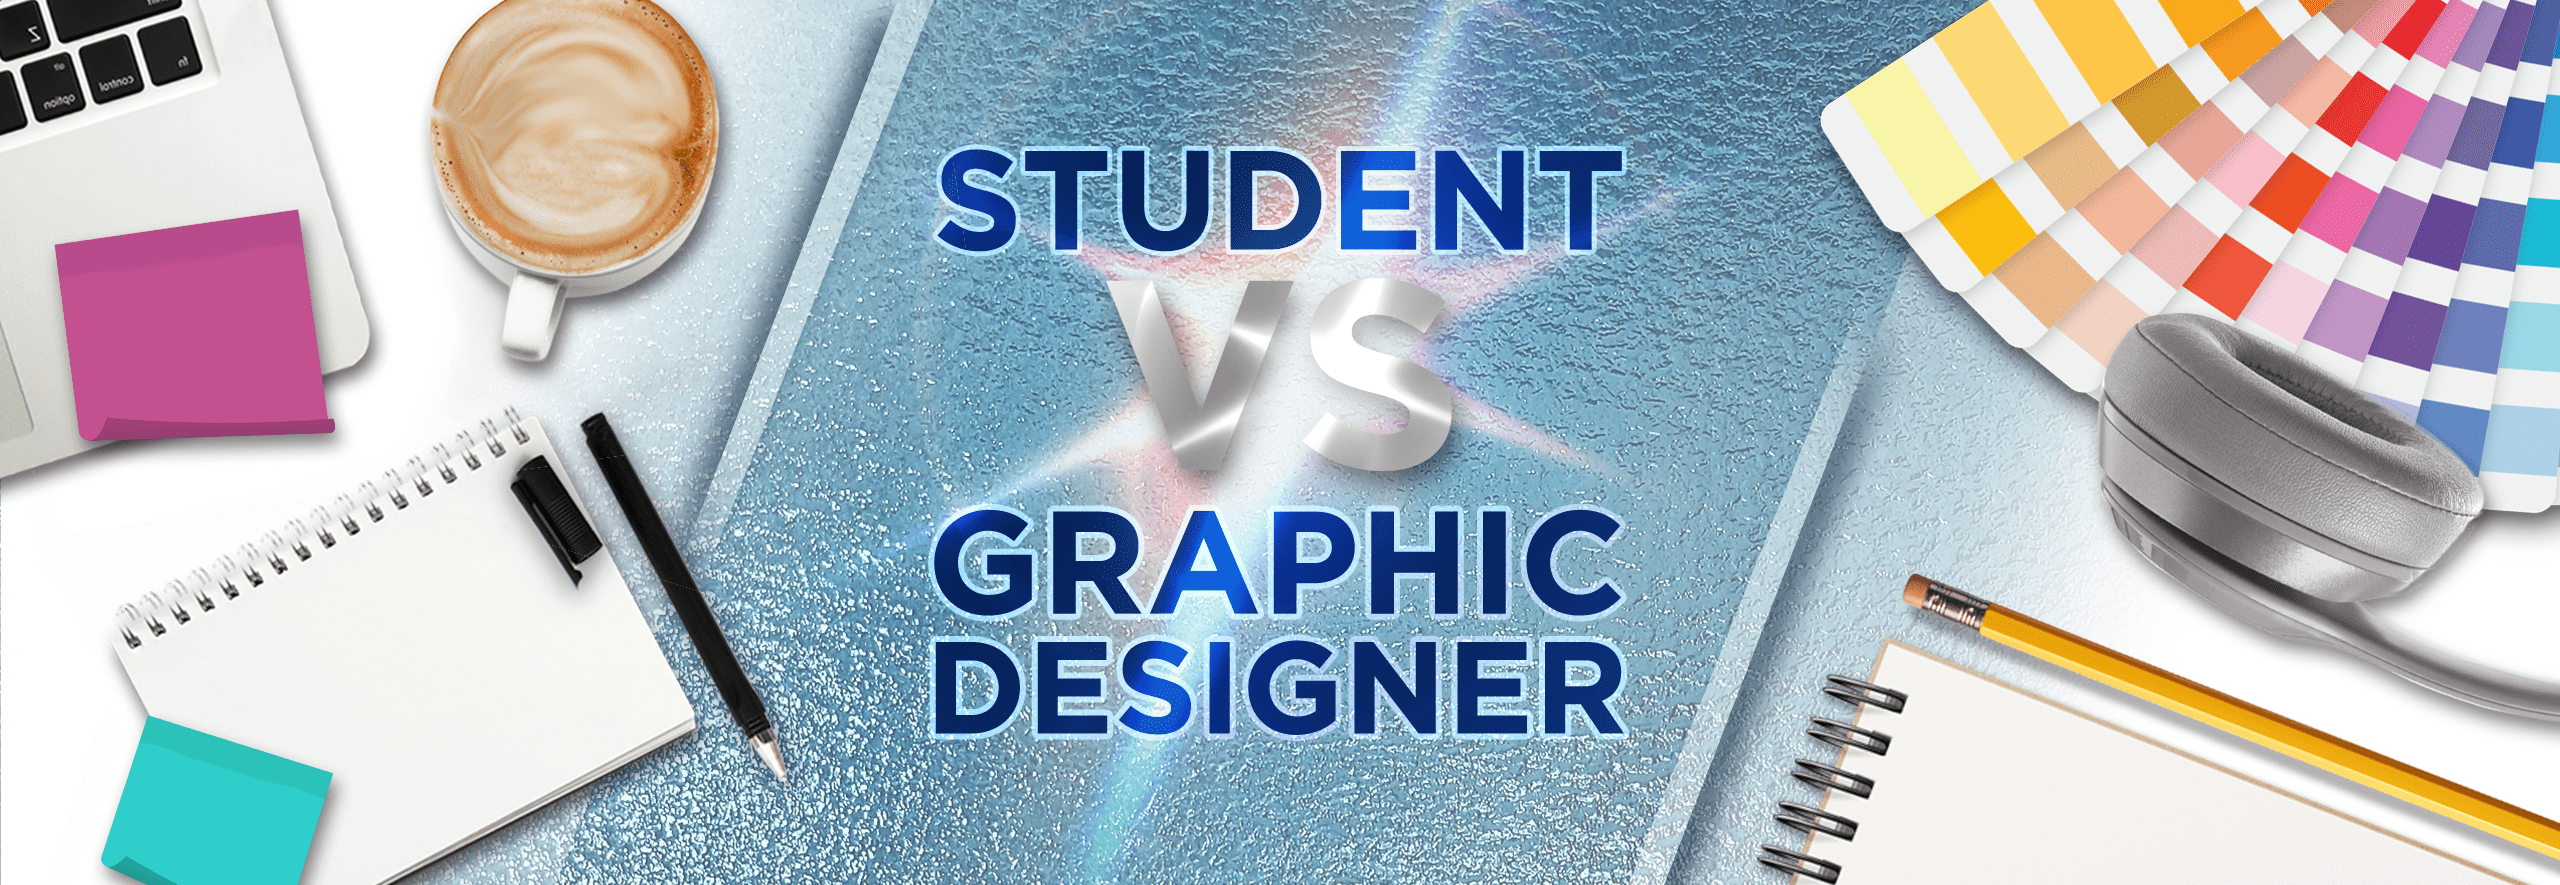 Generator Design - Student Vs. Graphic Designer